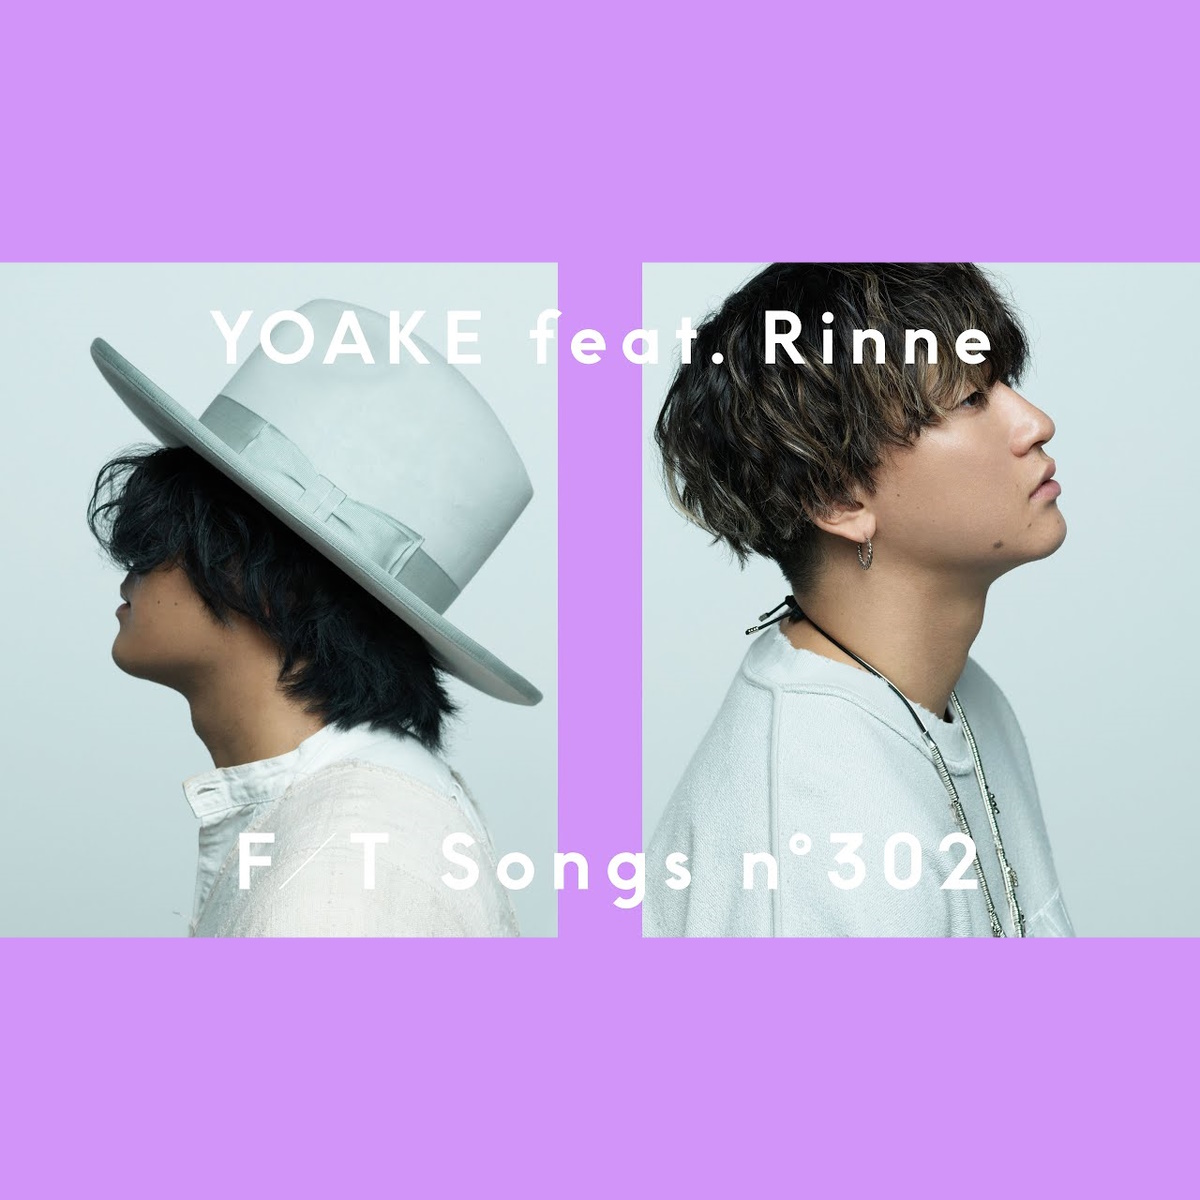 『YOAKE - ねぇ feat. Rin音』収録の『ねぇ feat. Rin音』ジャケット